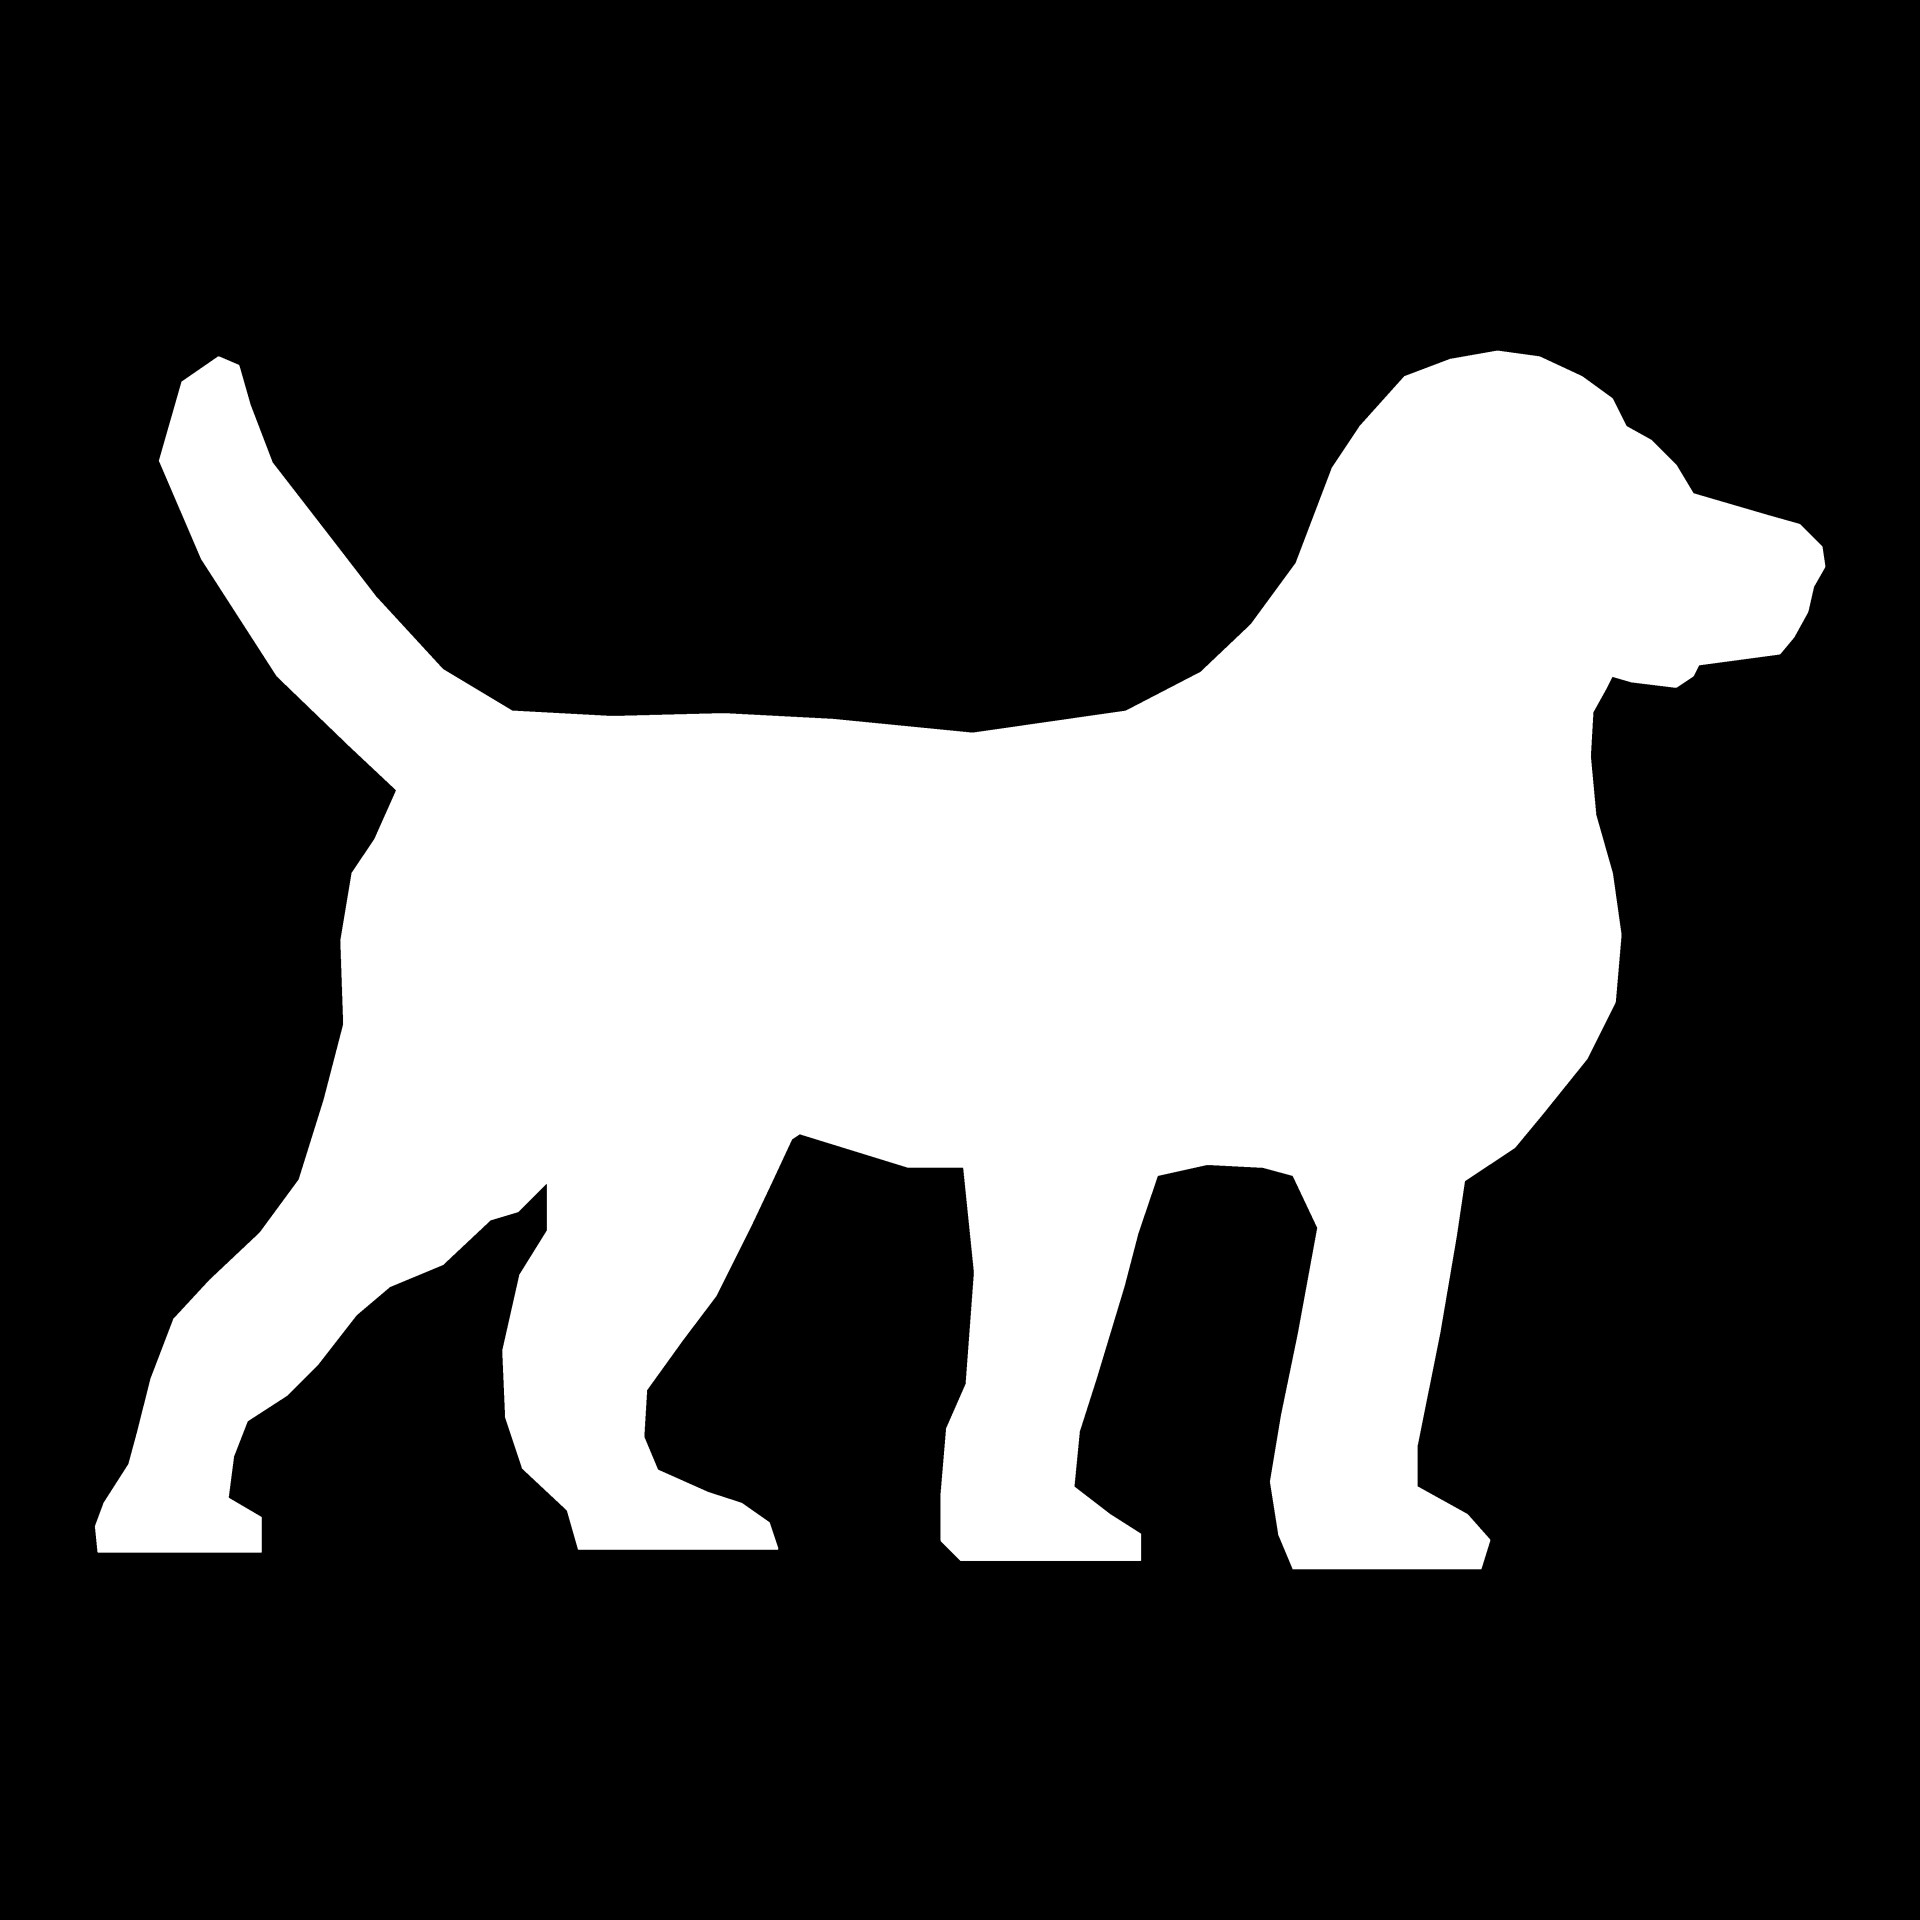 White,dog,black,background,shape   free image from needpix.com